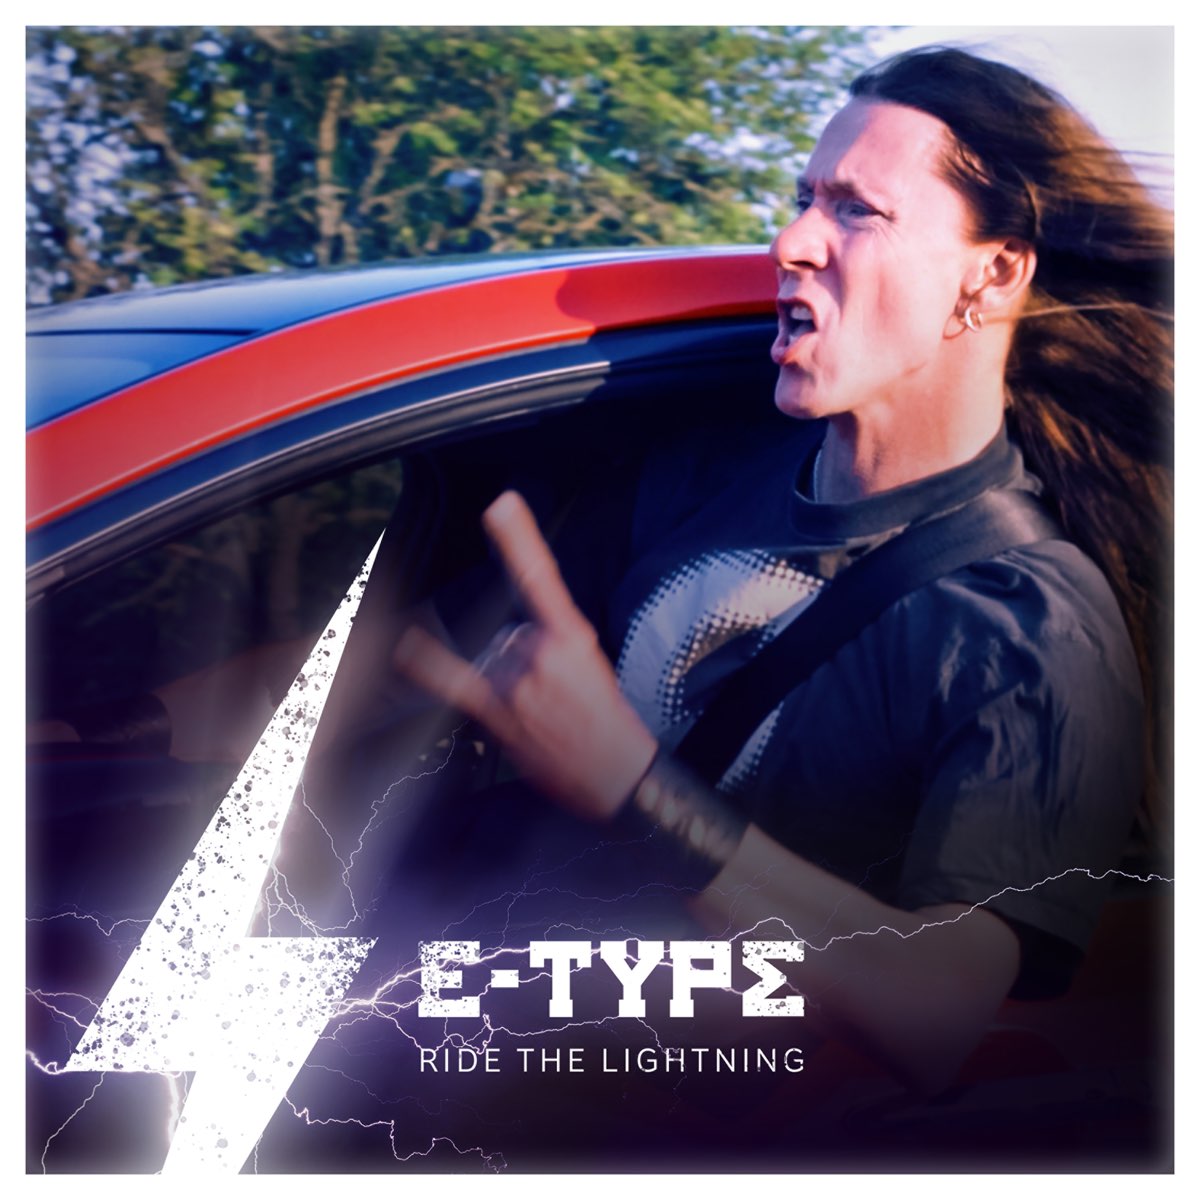 E type new. E-Type Ride the Lightning. E-Type обложки альбомов. Ride the Lightning обложка. E-Type 2019.